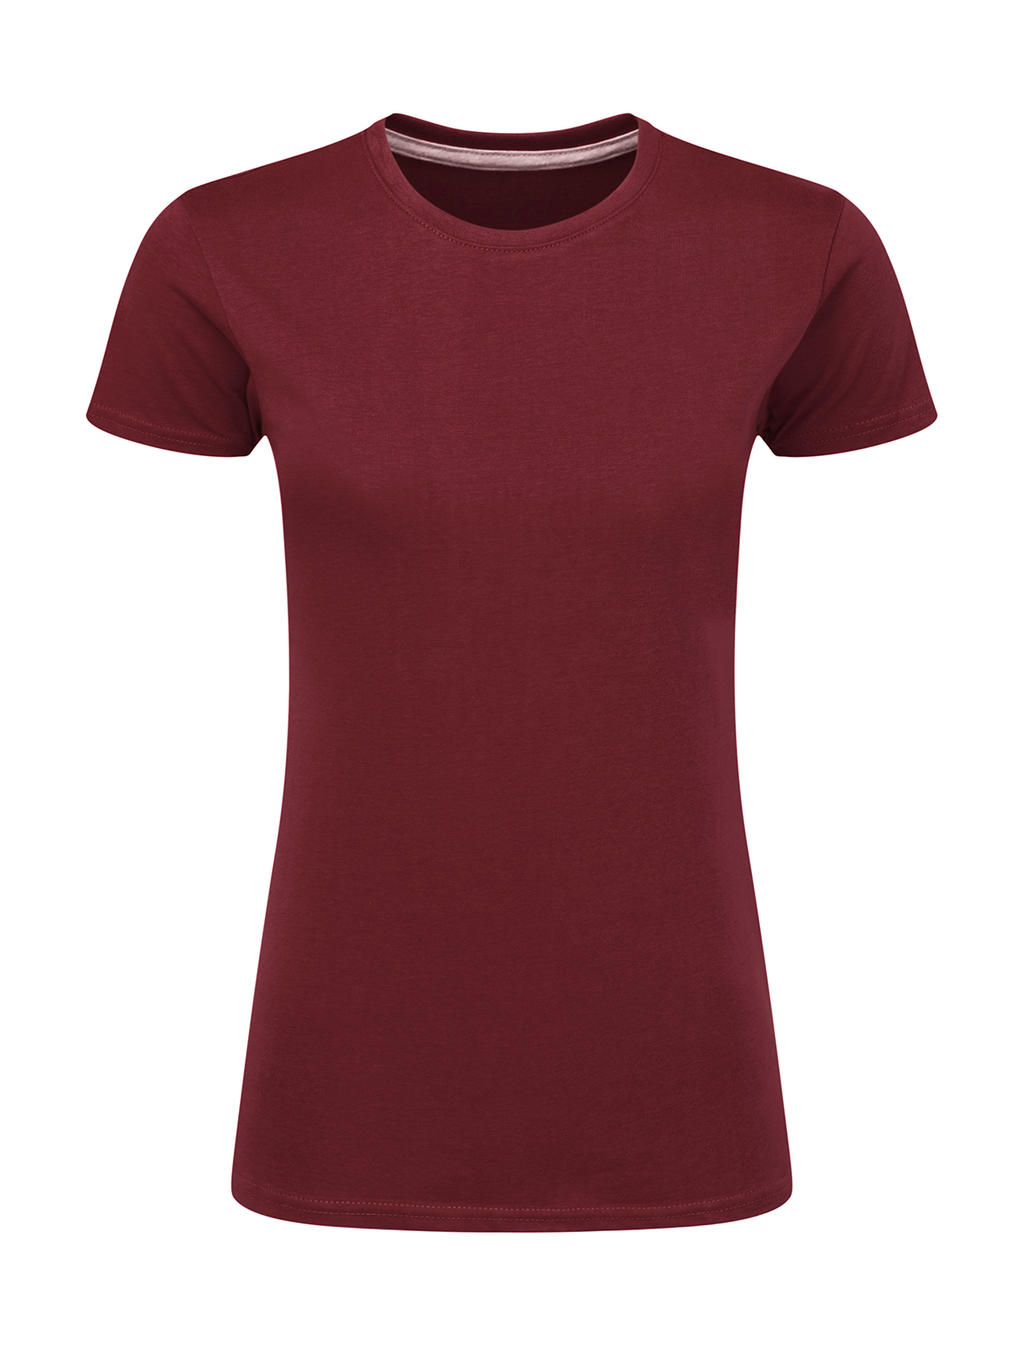 Dokonale potlačiteľné dámske tričko bez štítku - burgundy